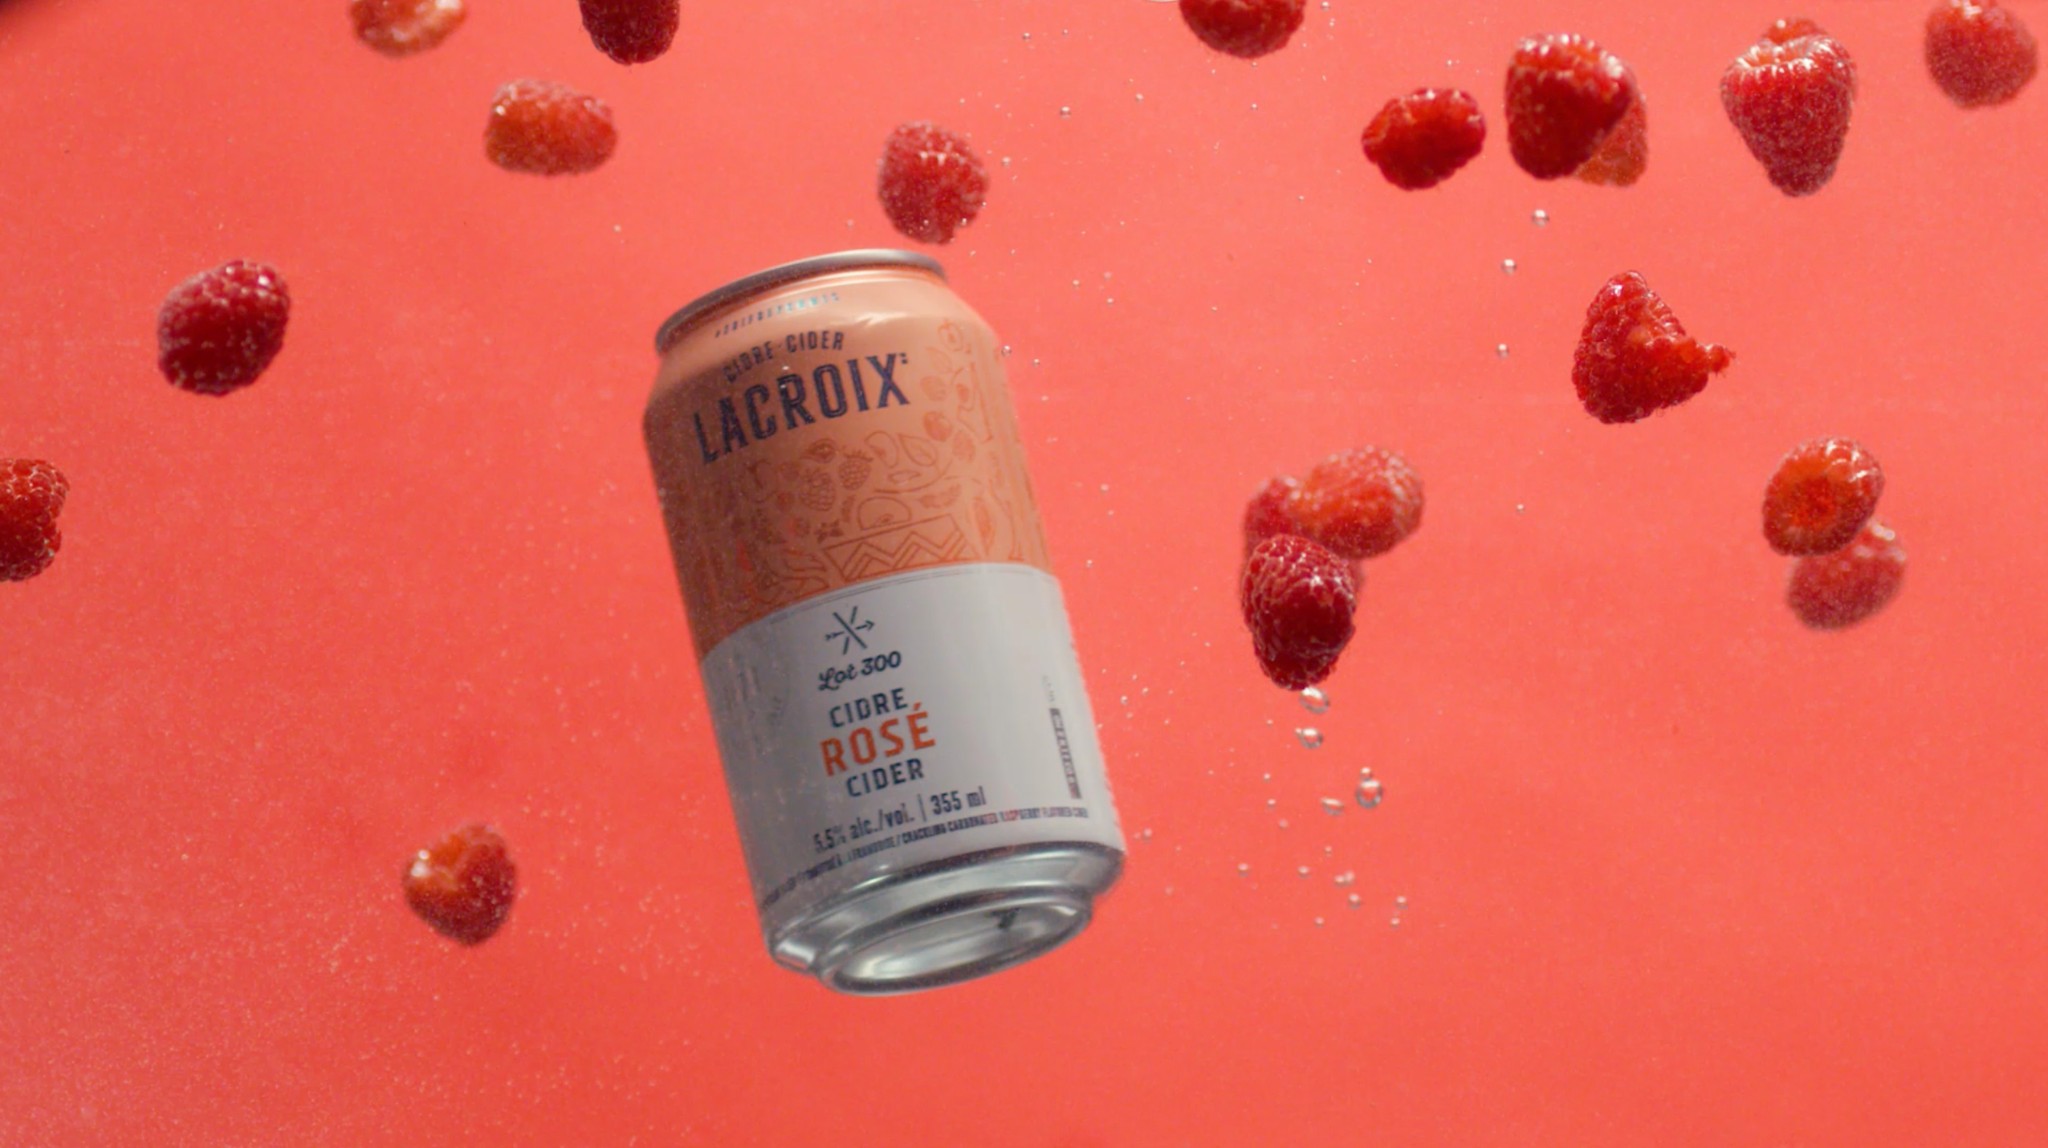 Featured image for “Lancement de la campagne Lot 300 pour Cidre Lacroix – Avril 2020”